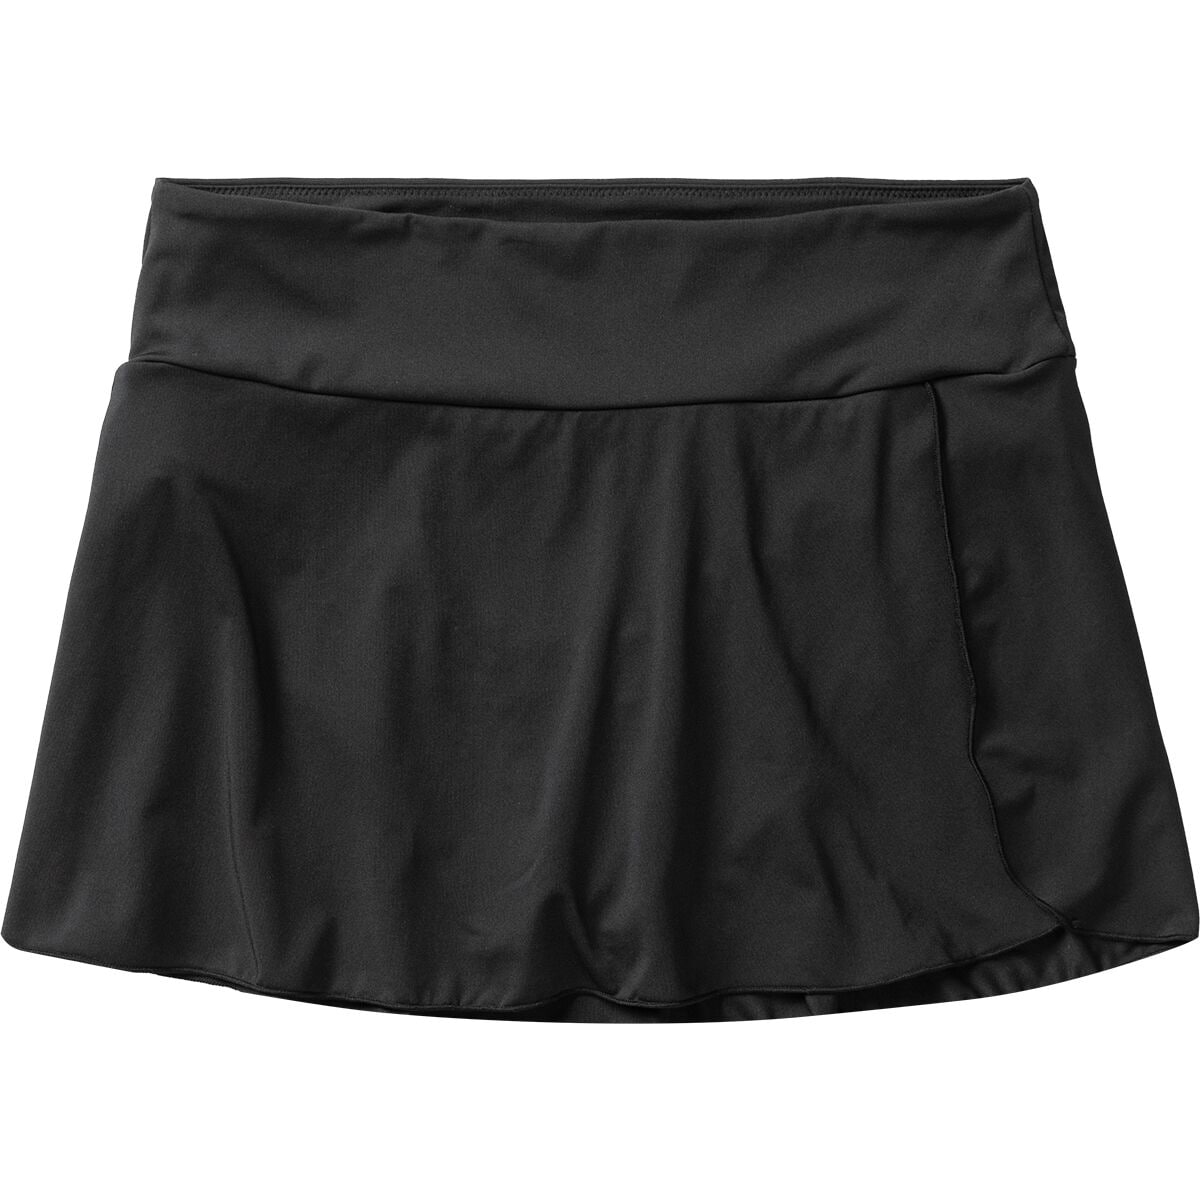 Malia Swim Skirt - Women